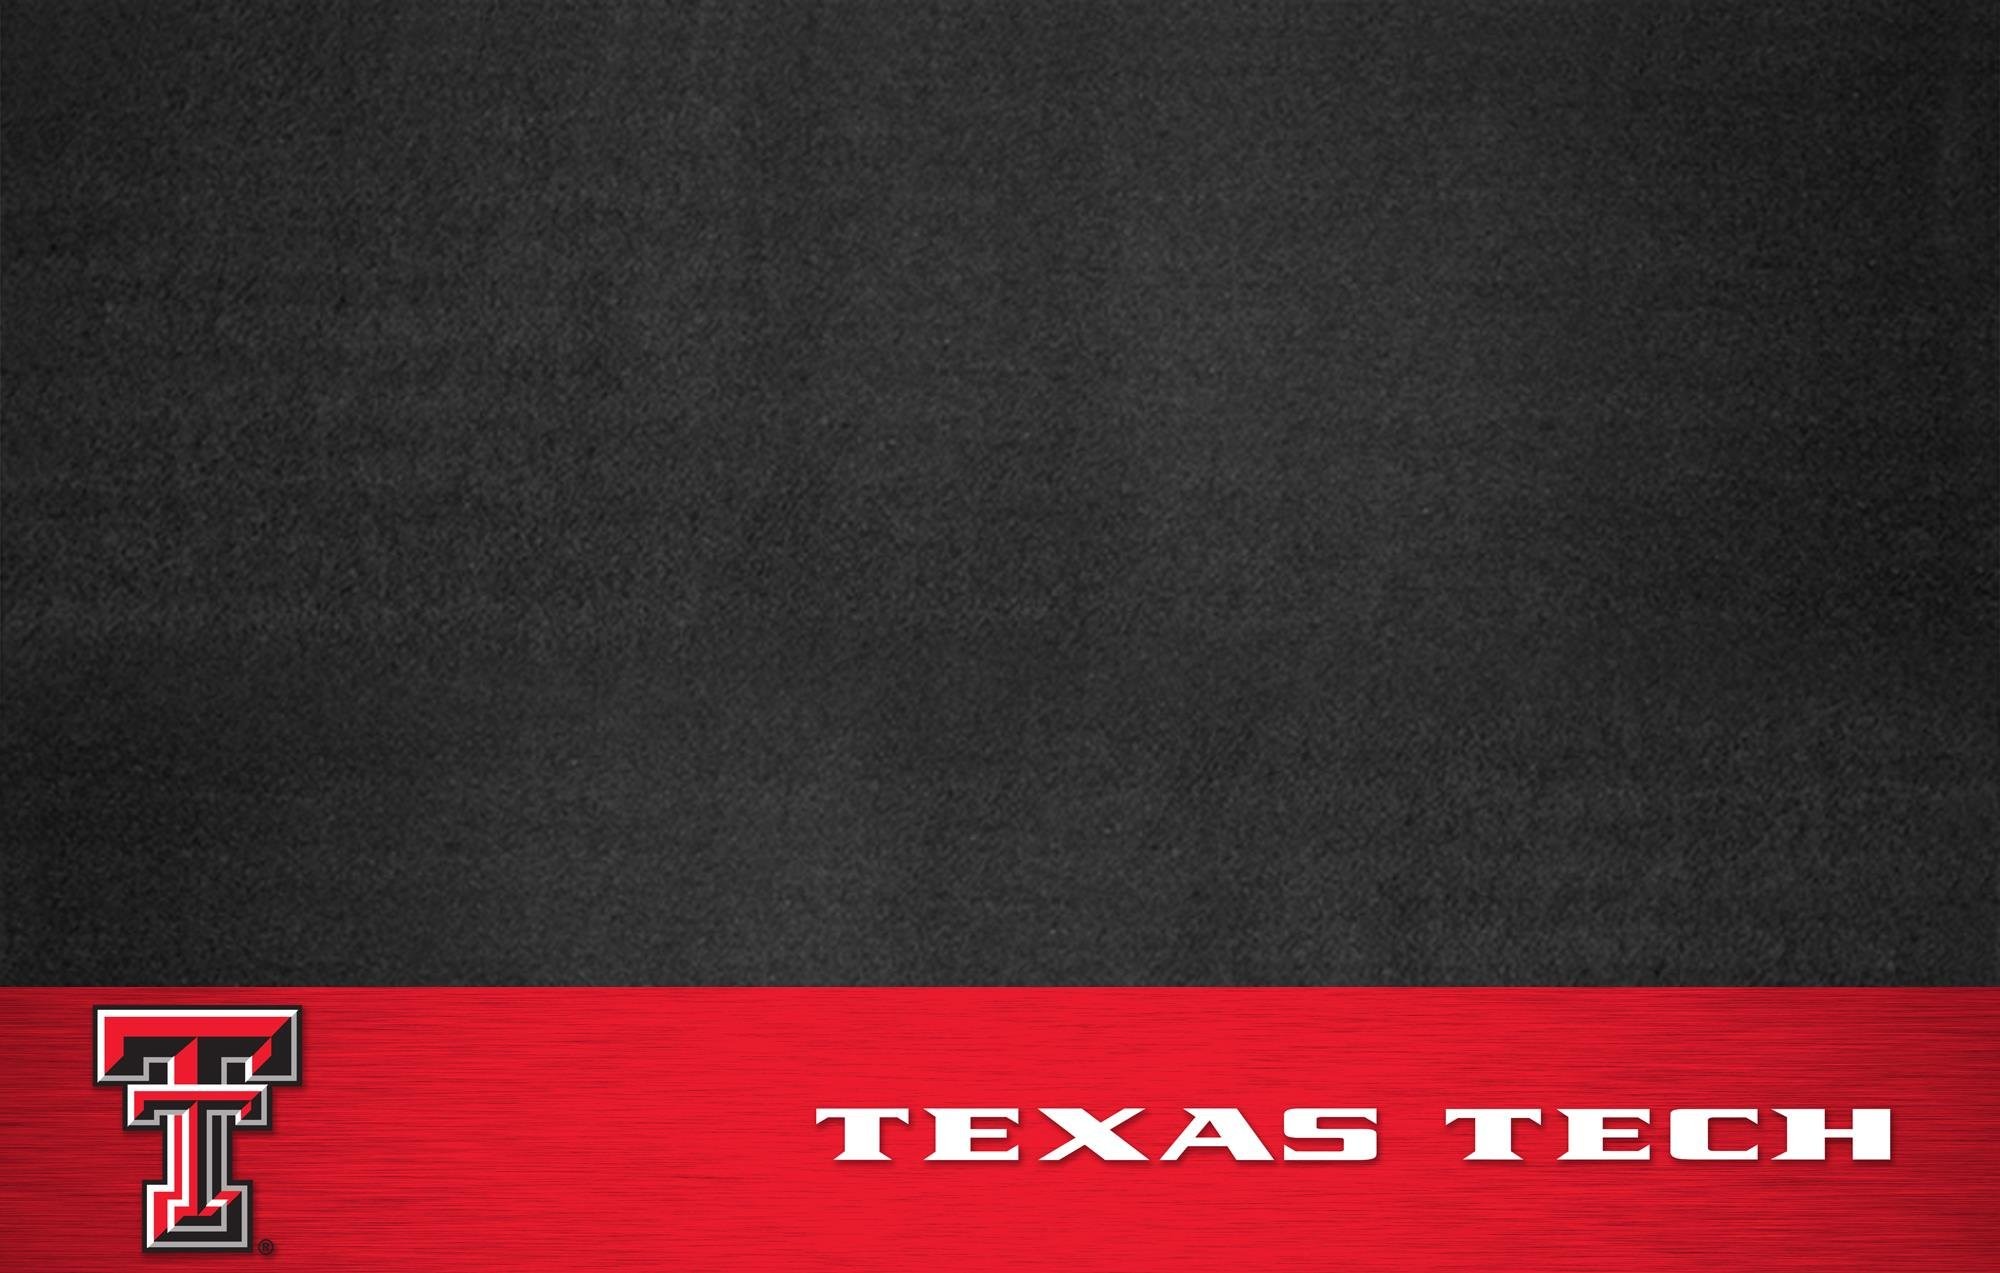 2000x1273 Texas Tech Wallpaper Football PC Texas Tech Football | HD Wallpapers |  Pinterest | Football wallpaper, Wallpaper and Hd wallpaper